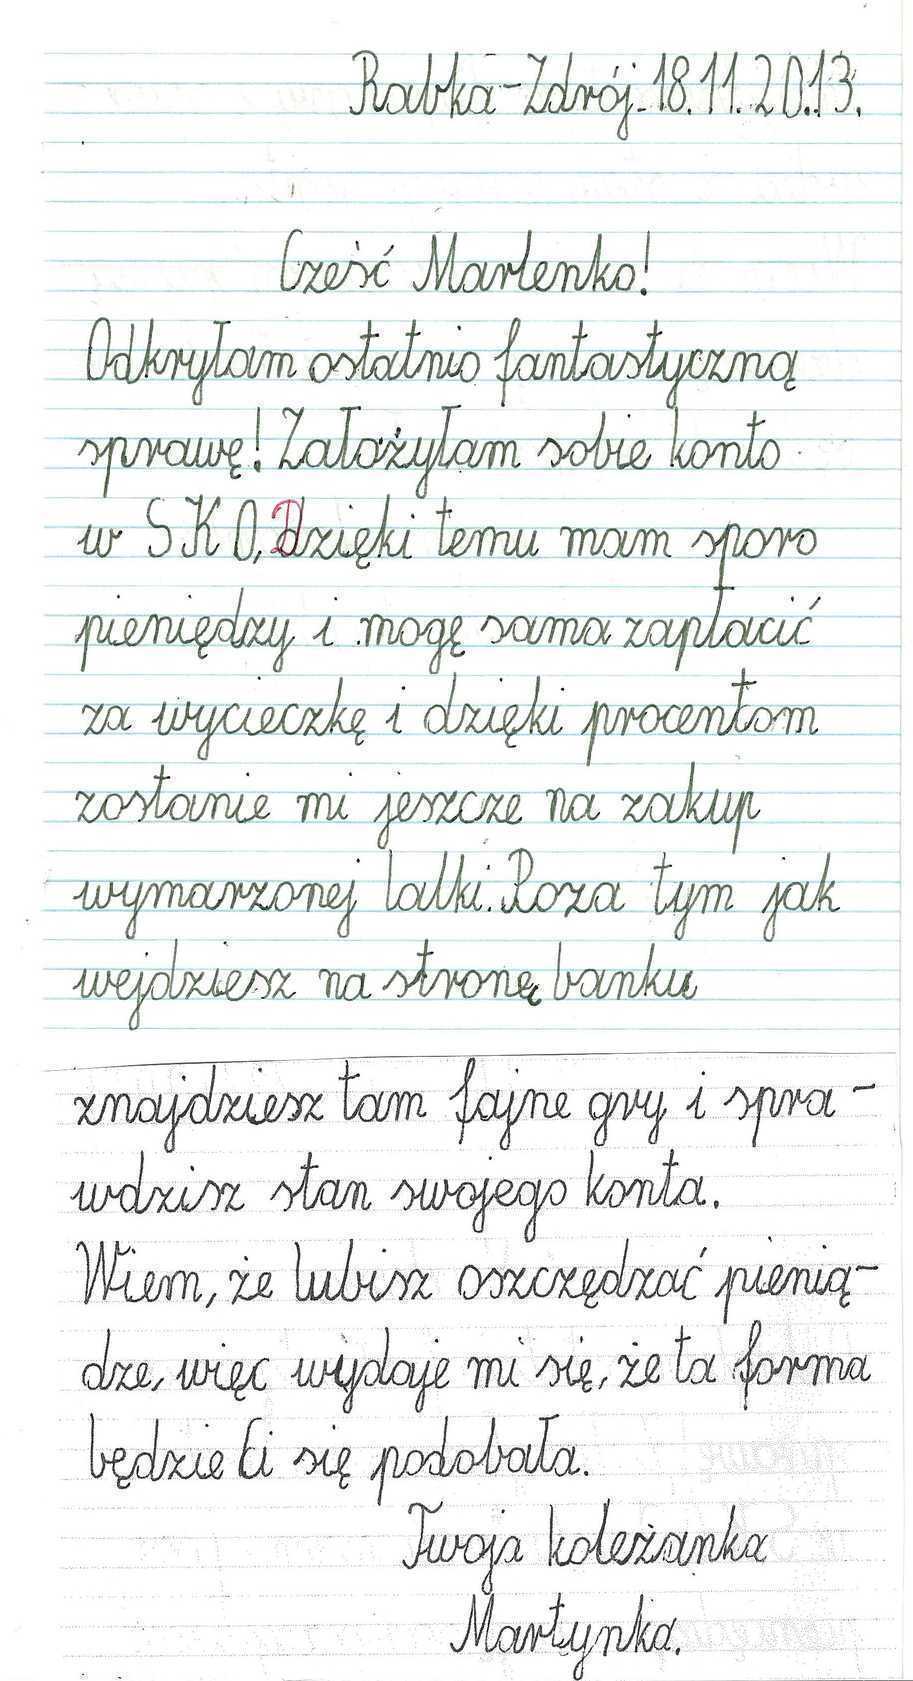 Польские прописи, каллиграфия: пишем красиво по-польски от руки